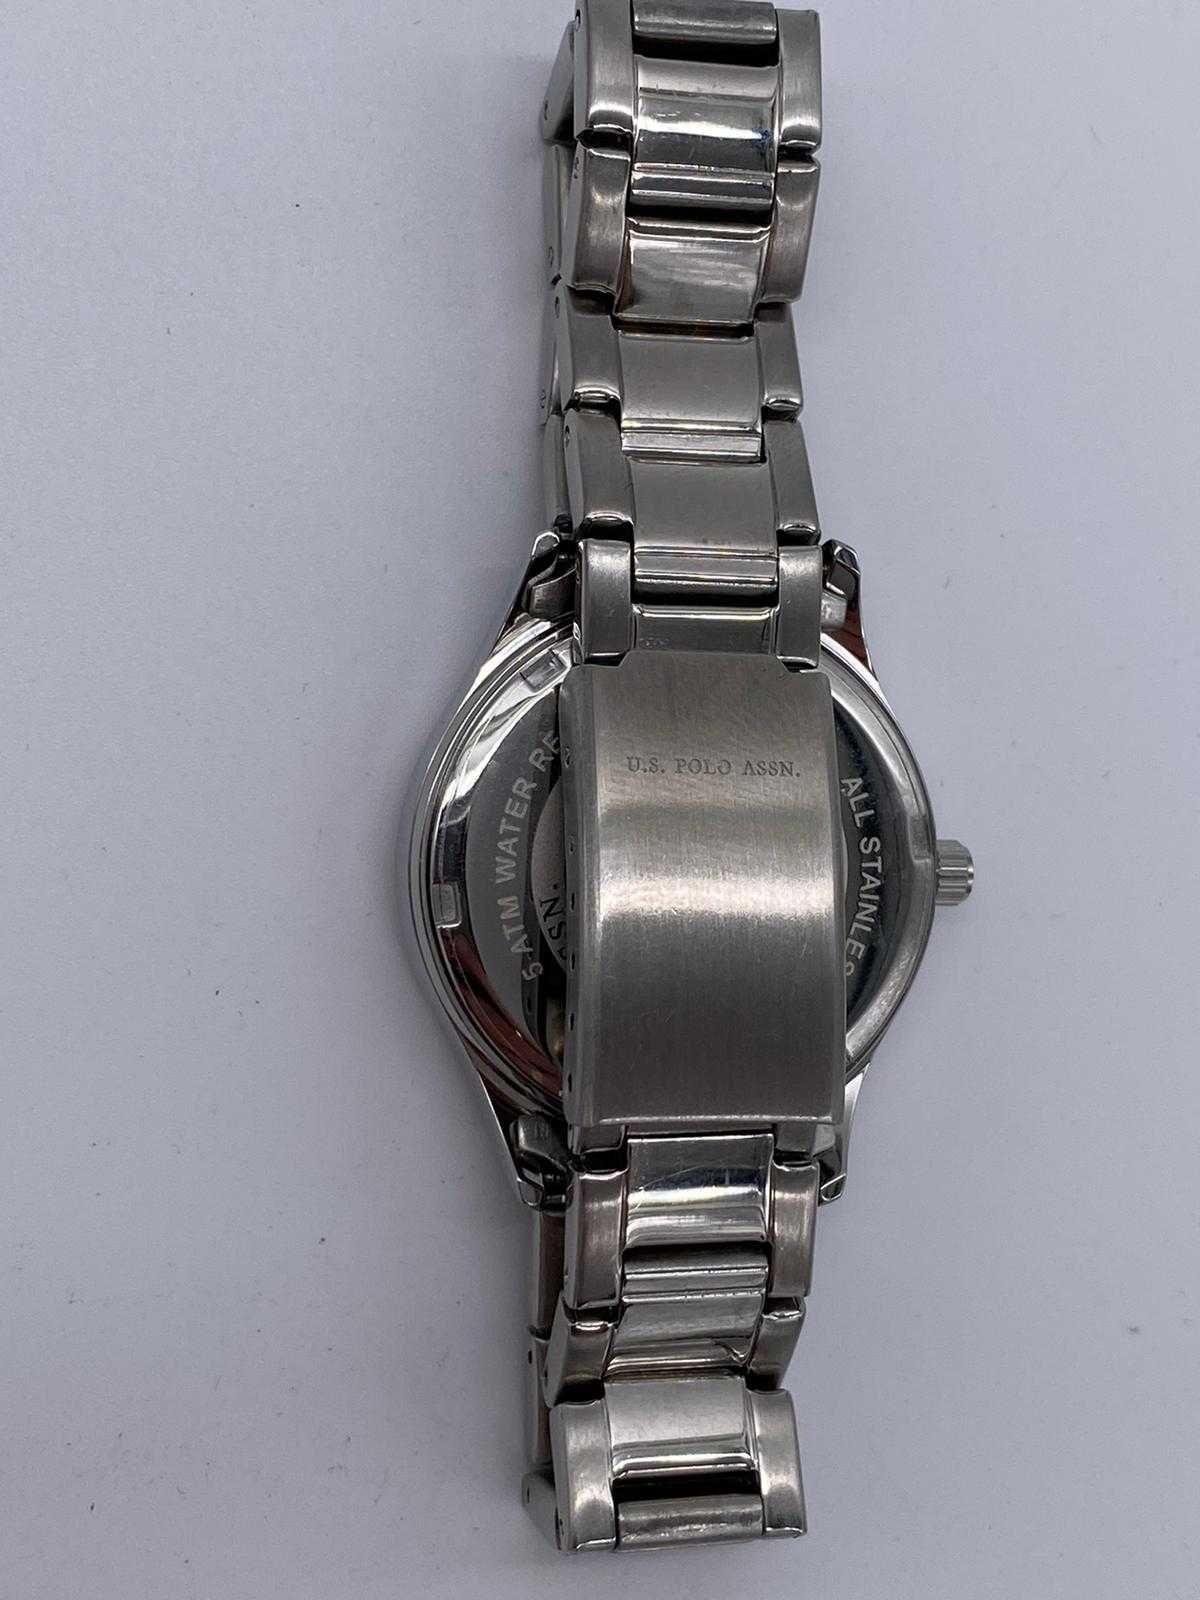 Srebrny damski klasyczny elegancki  zegarek U.S Polo